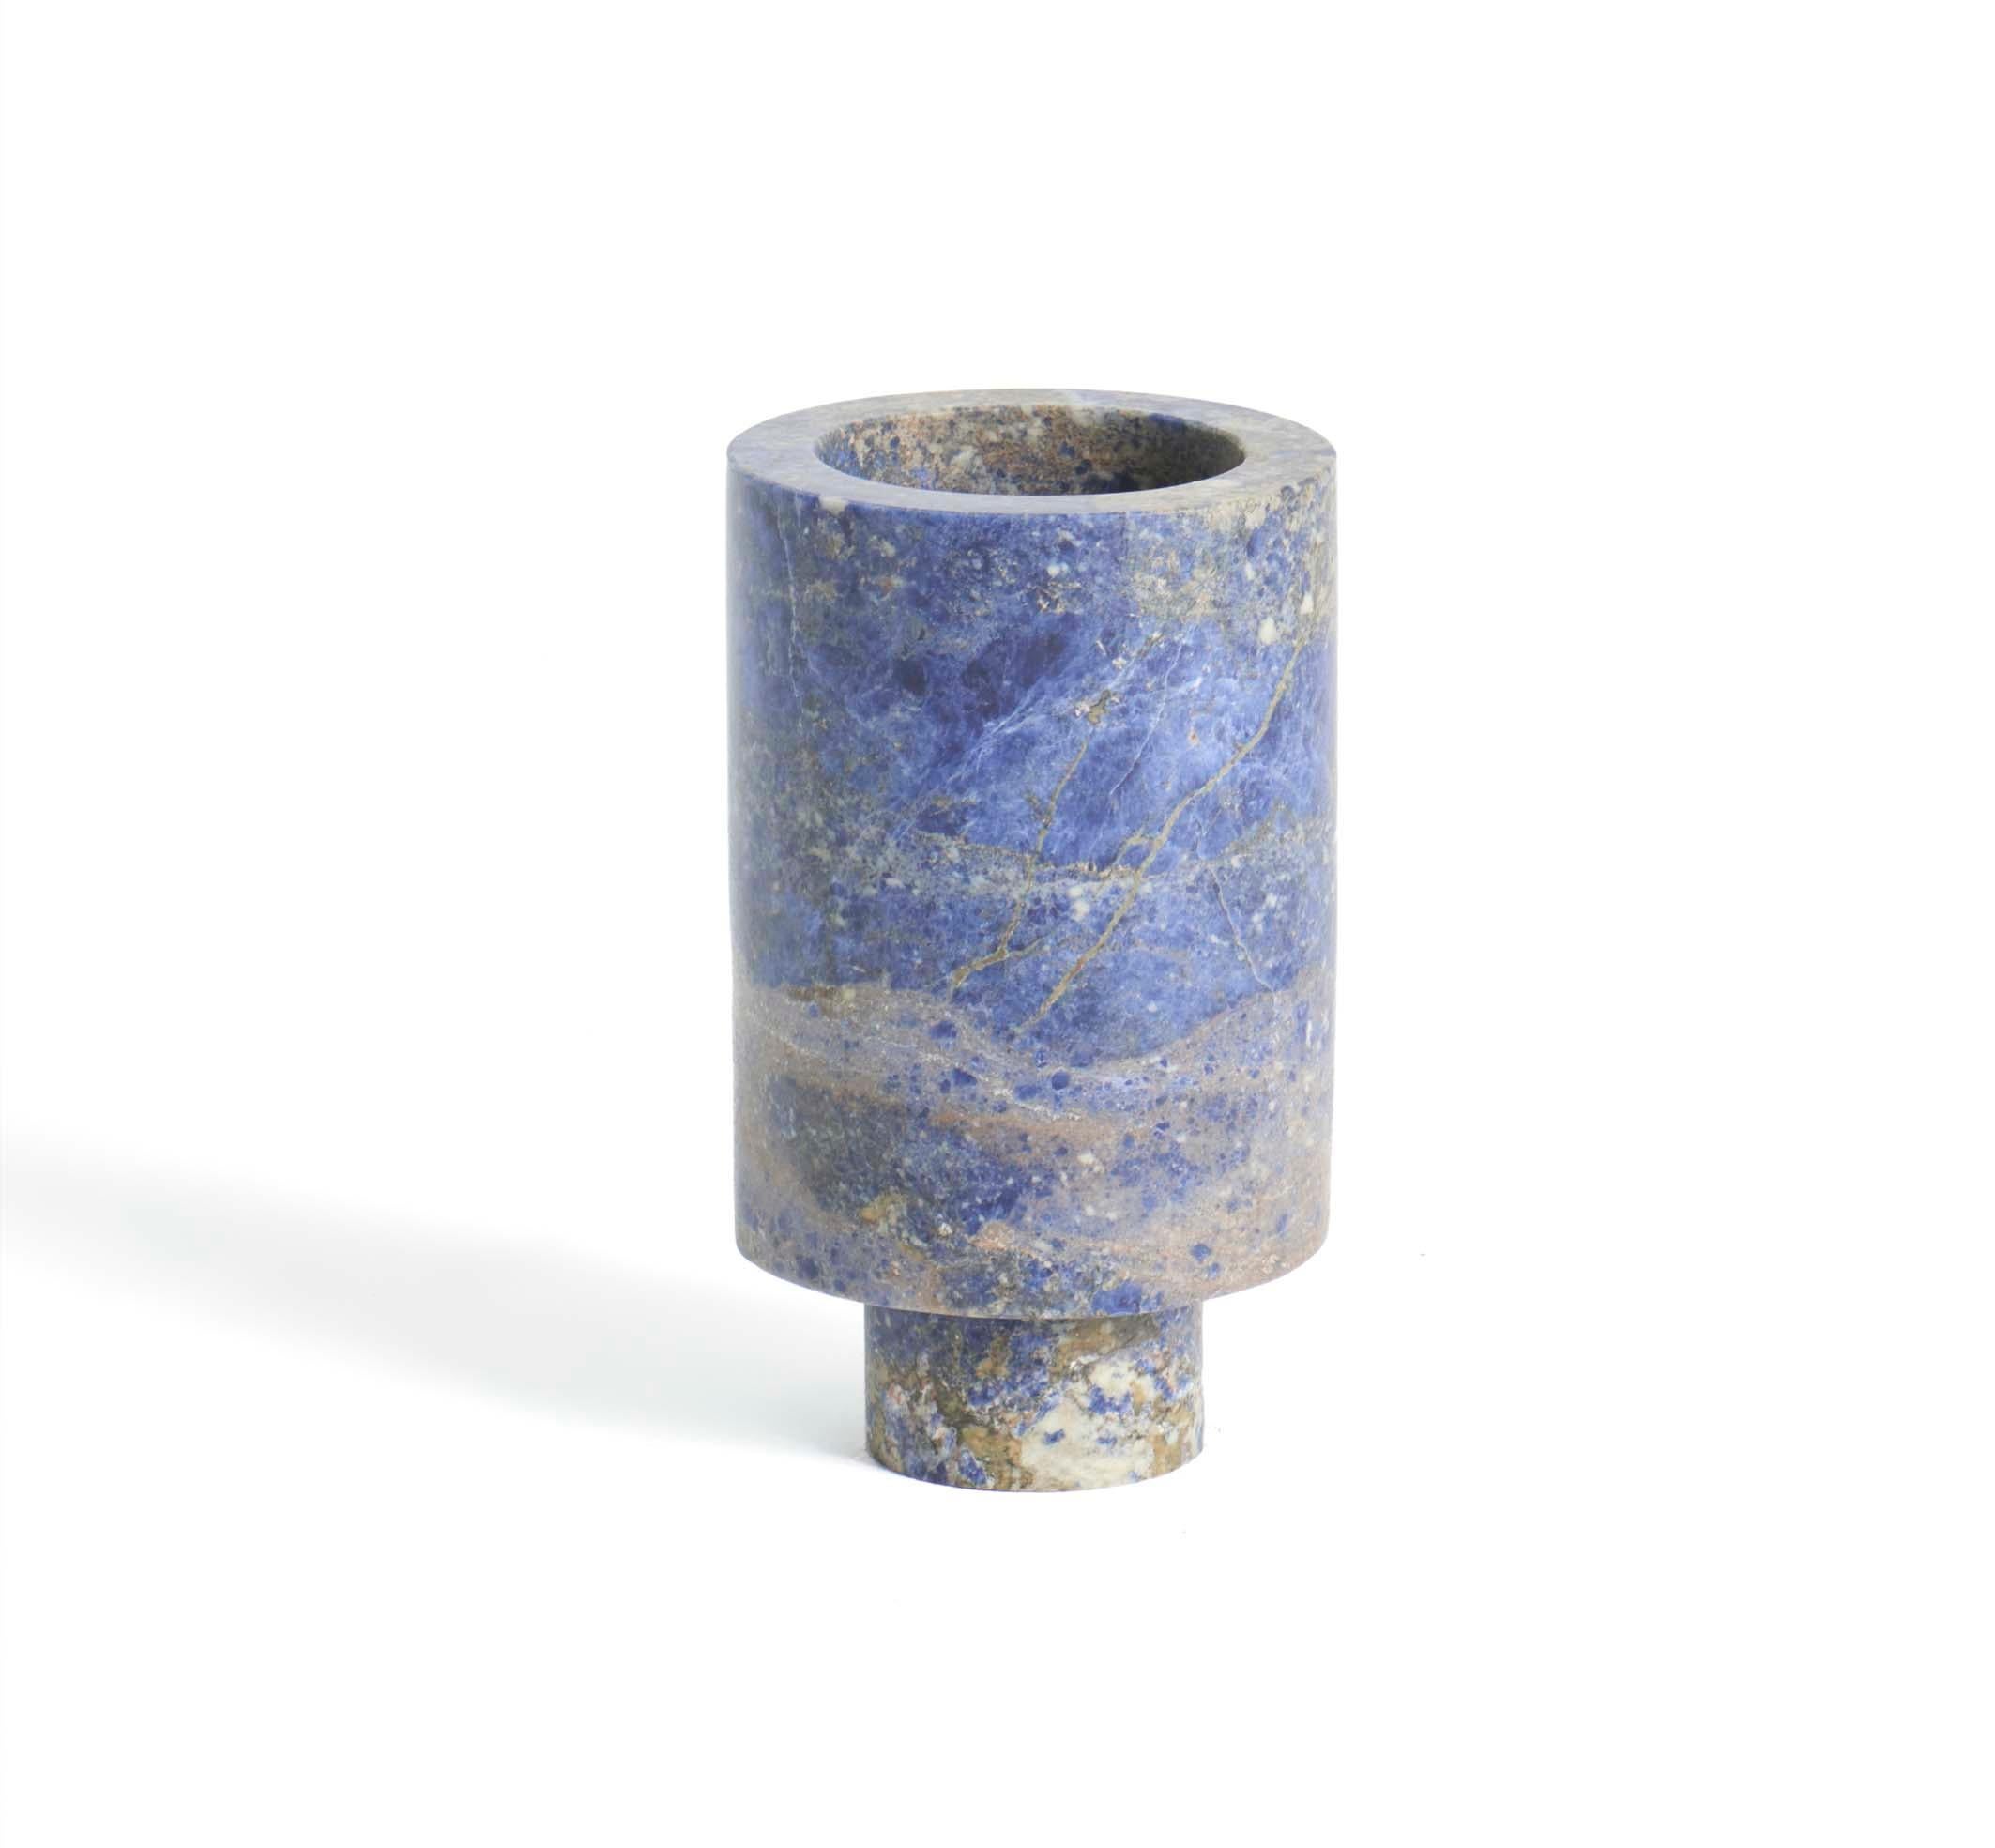 Blaue Vase von innen nach außen von Karen Chekerdjian
Abmessungen: 8 x 24 cm
MATERIALIEN: Blauer Sodalith

Karens Weg zum Design war unsystematisch und bestand aus einer Kombination von praktischen Erfahrungen in verschiedenen kreativen